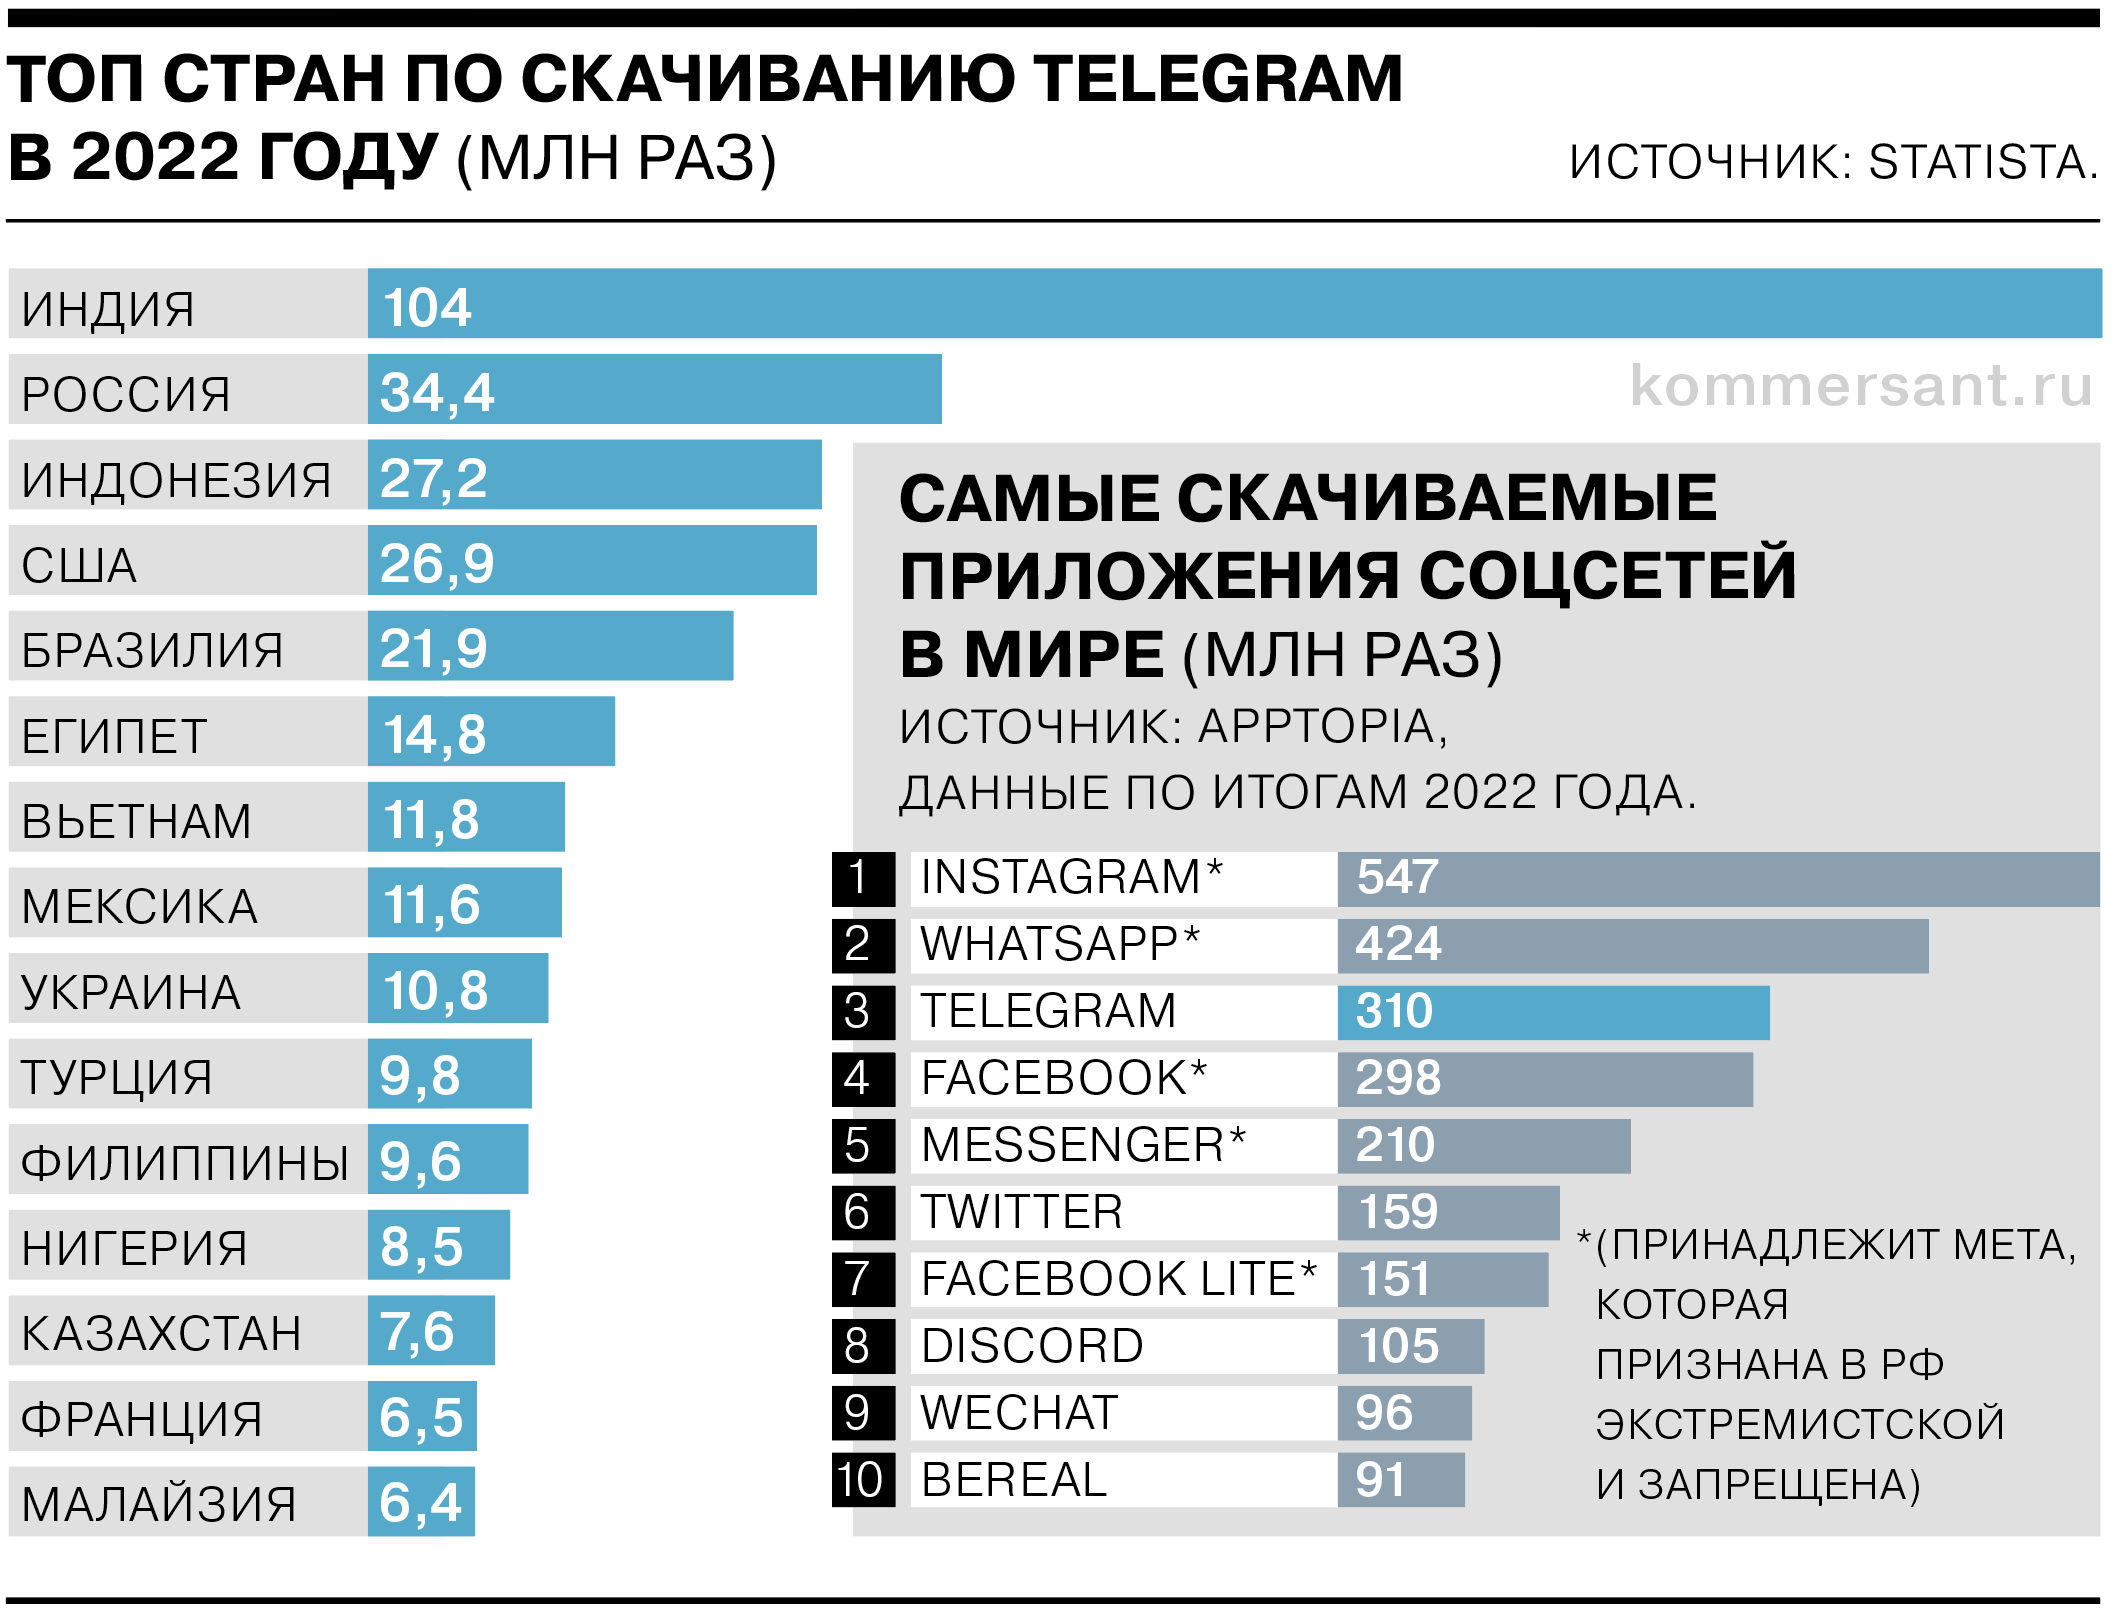 Как жить в 2023 году. Телеграмм 2023. Рейтинг мессенджеров в России 2023. Аудитории телеканалов 2023. Сколько пользователей в телеграмм в России 2023 год.